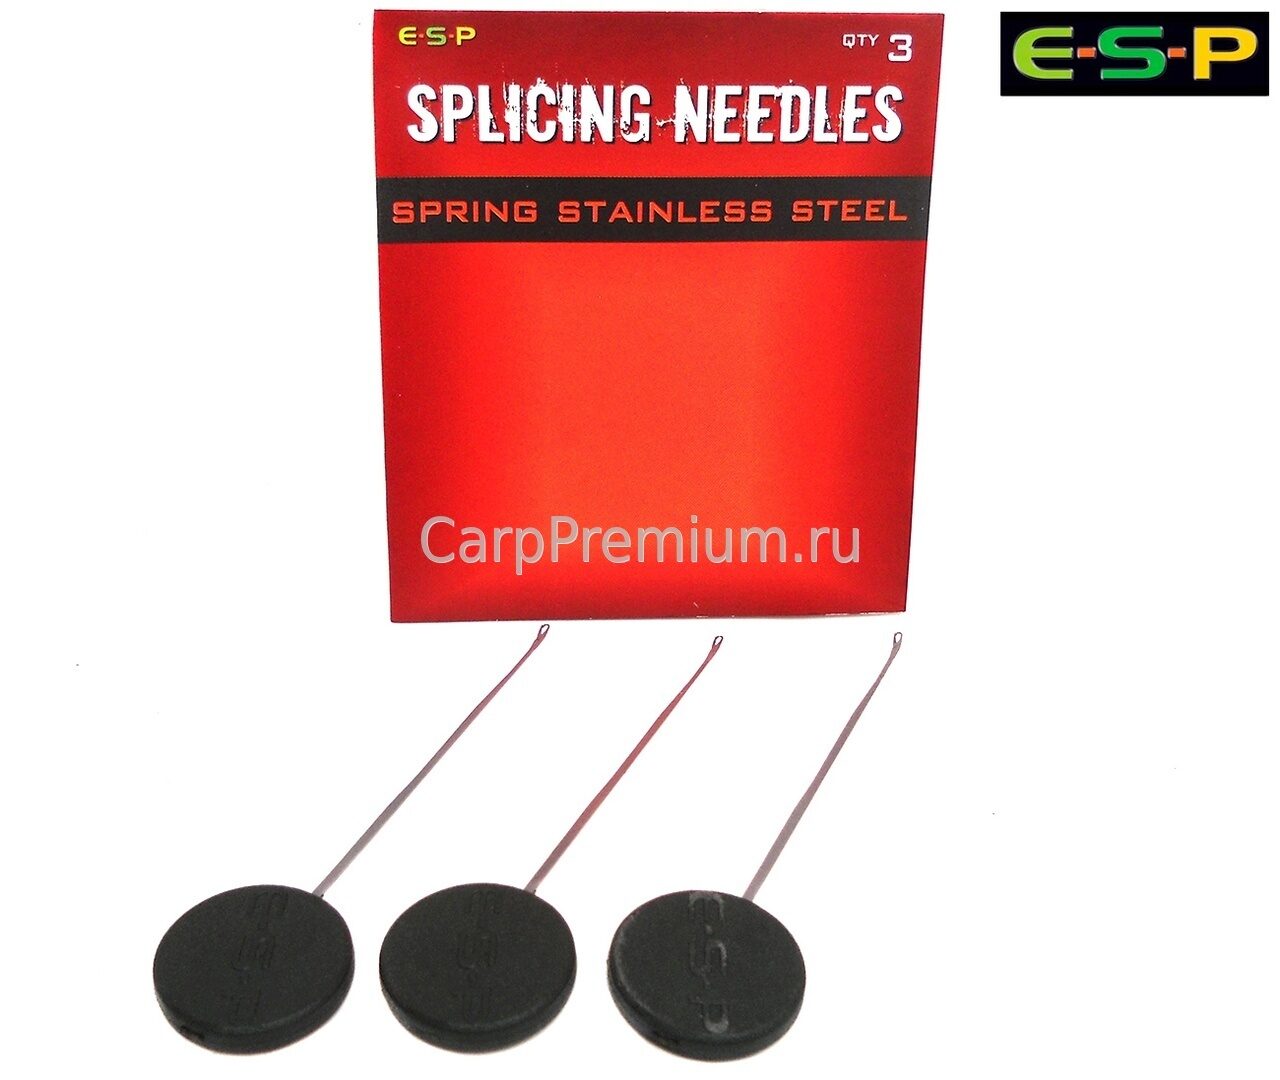 Игла для лидкора ESP (ЕСП) - Splicing Needles